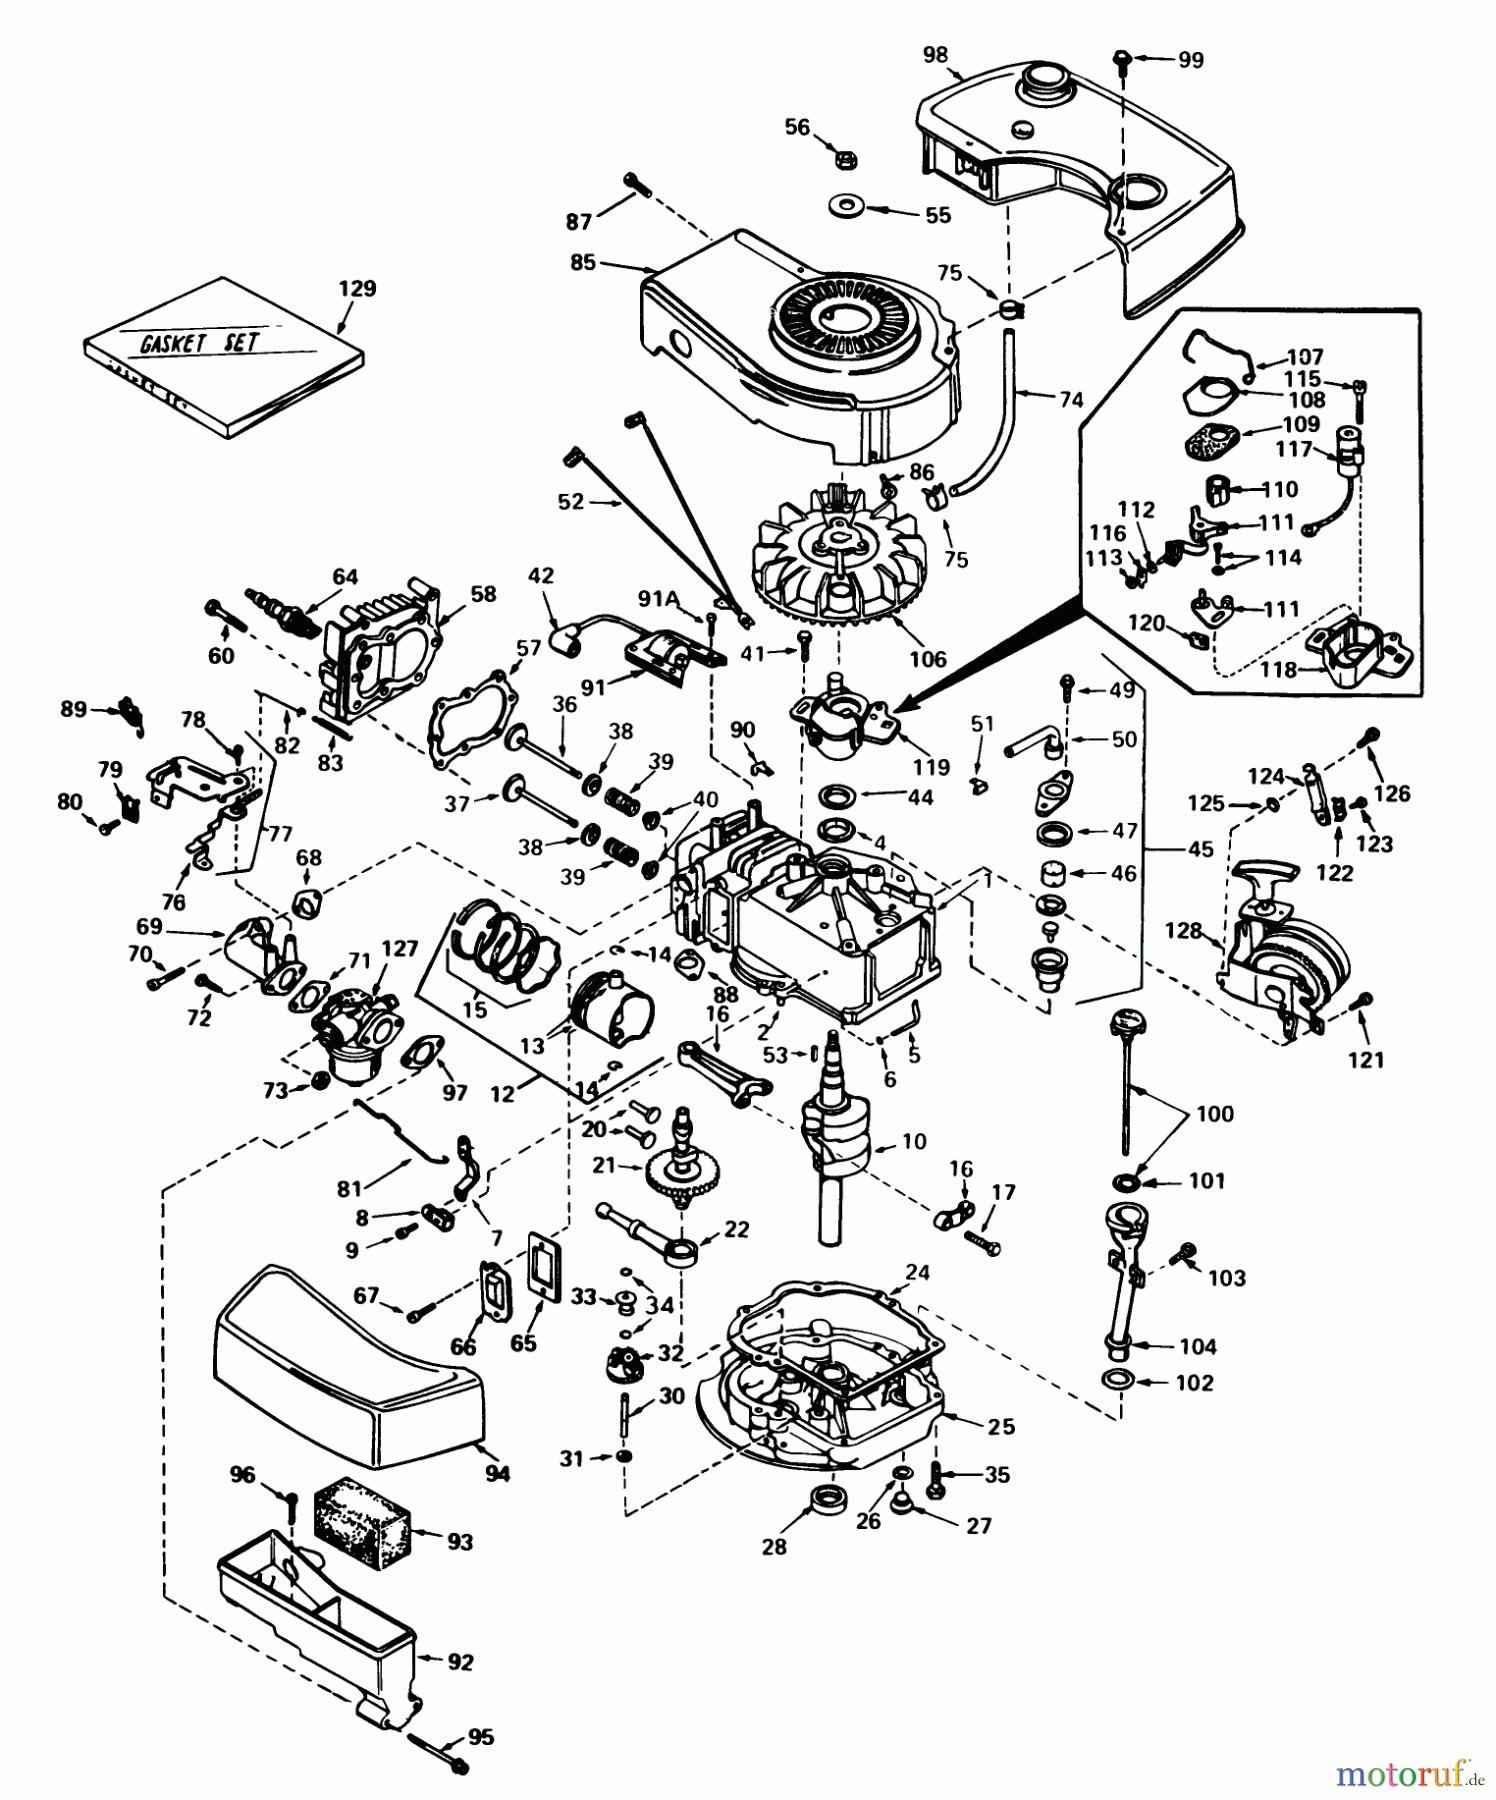  Toro Neu Mowers, Walk-Behind Seite 1 16165 - Toro Lawnmower, 1980 (0000001-0999999) ENGINE TECUMSEH MODEL NO. TNT 100-10071C